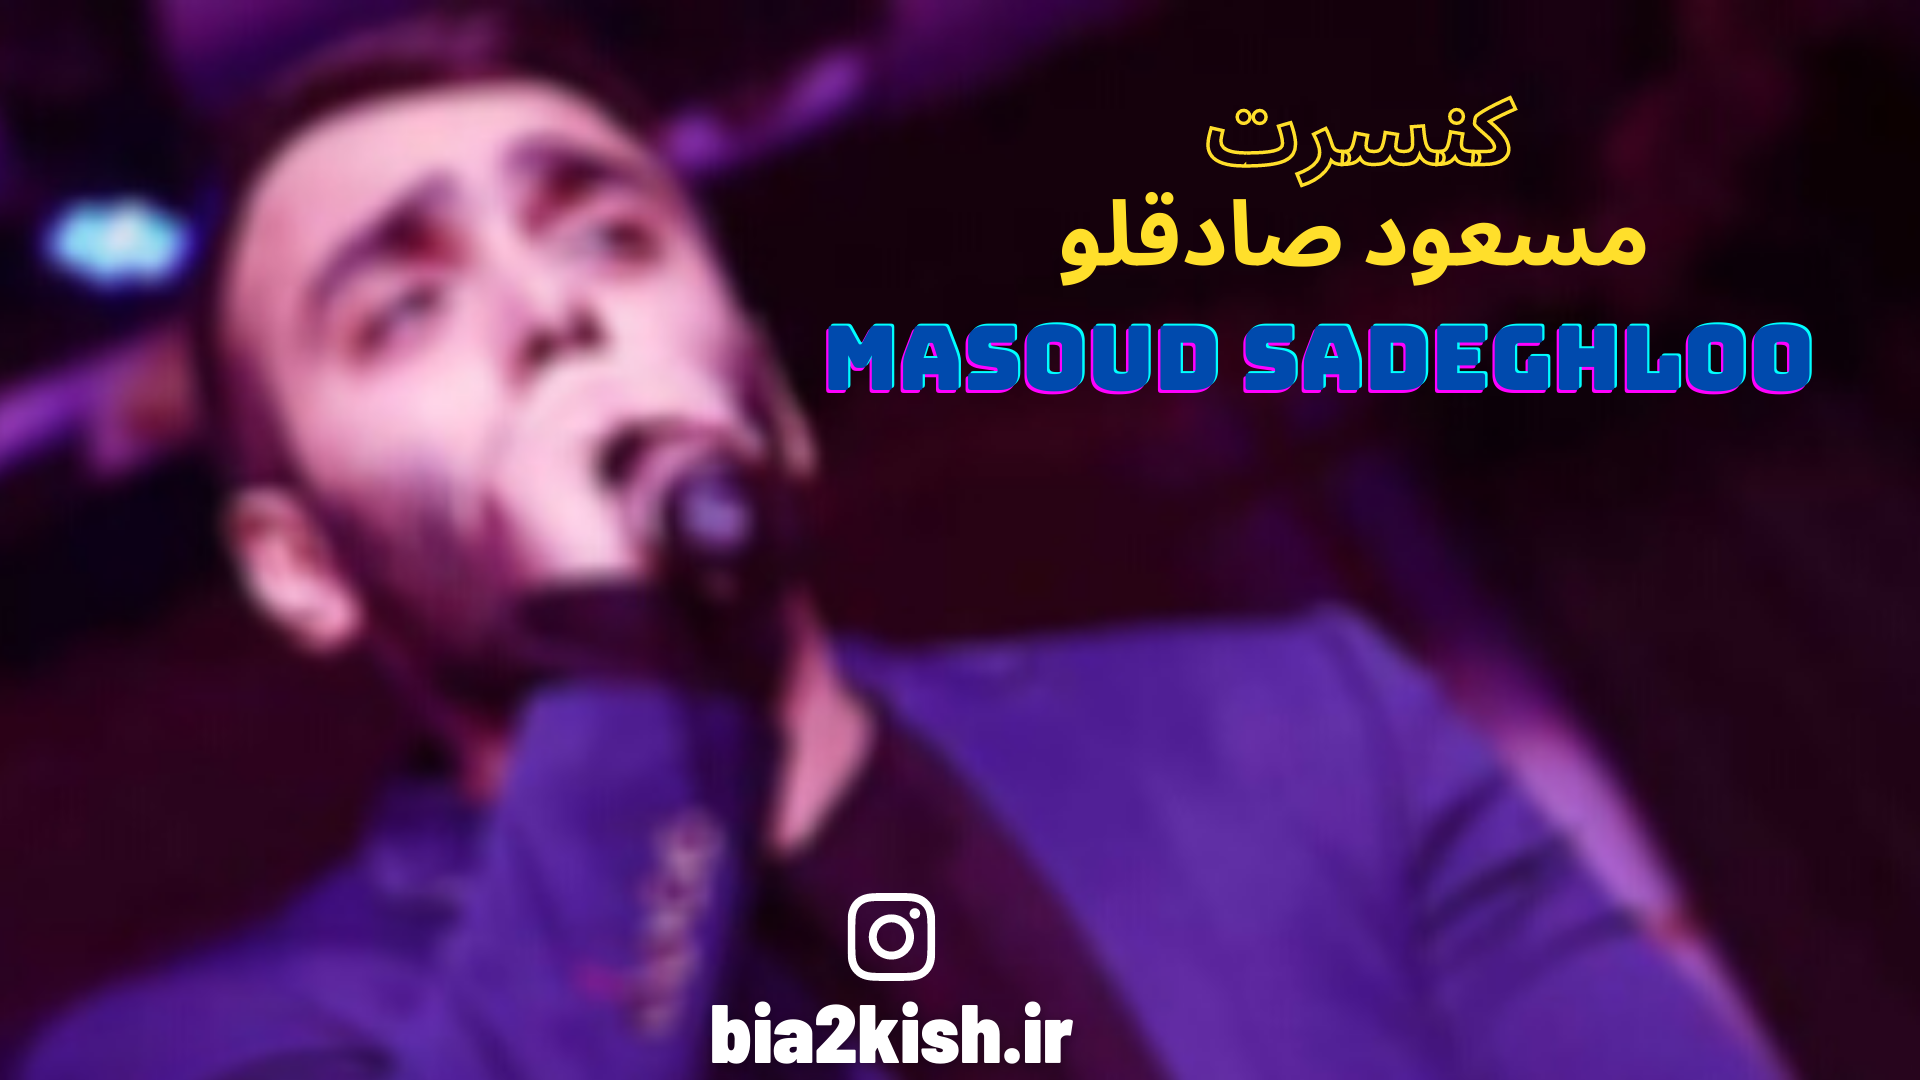 کنسرت مسعود صادقلو جزیره کیش